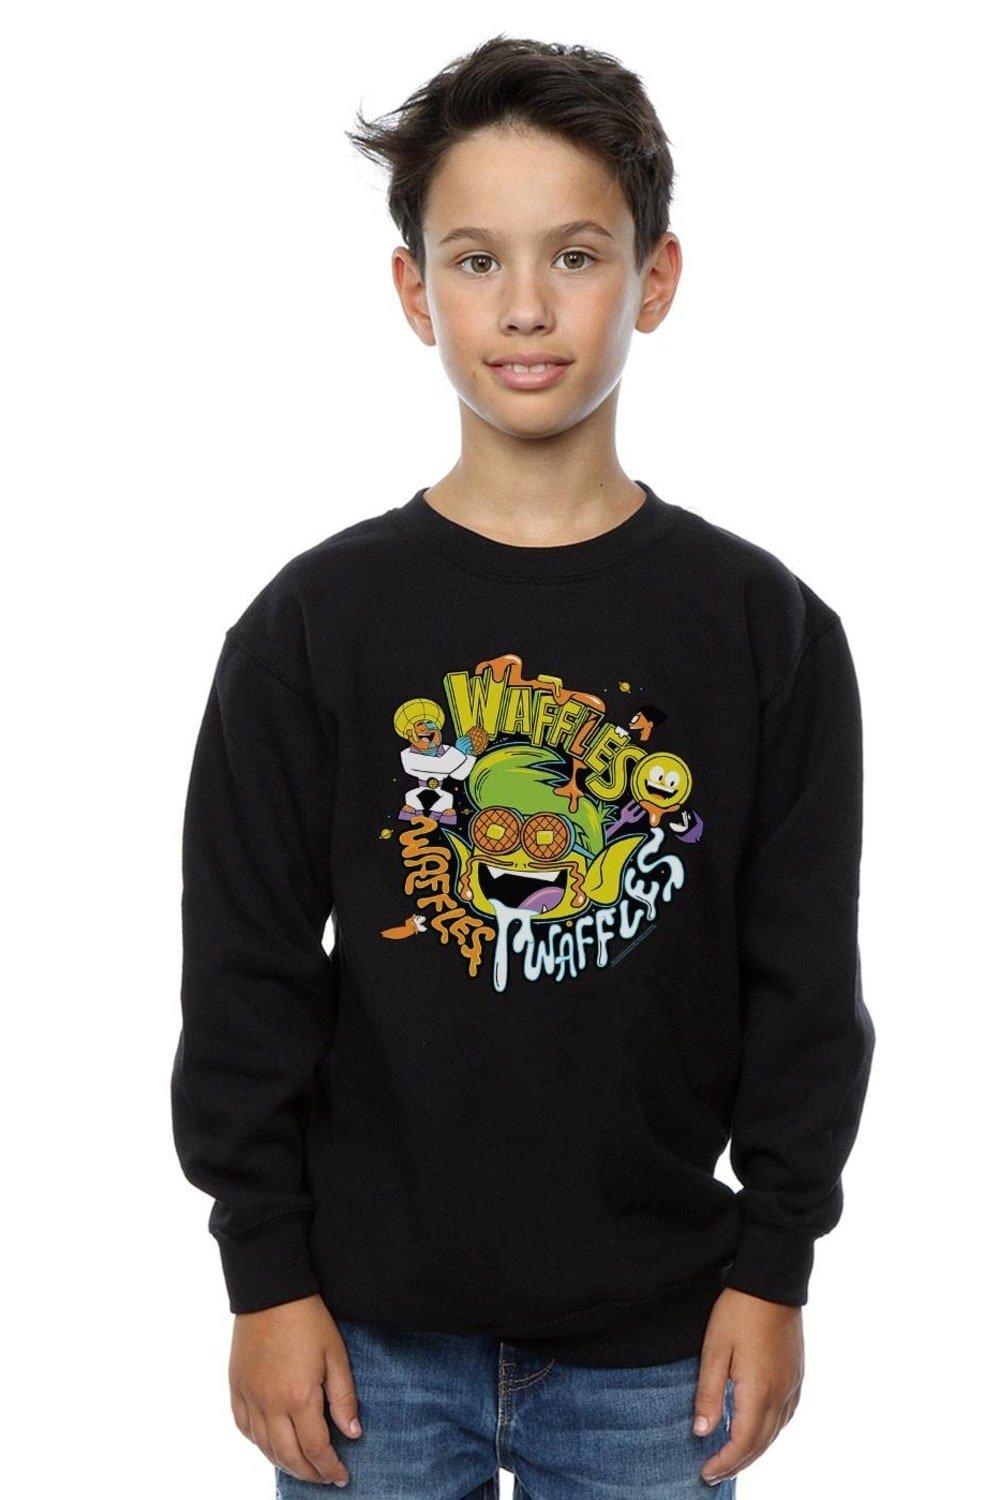 Teen Titans Go Waffle Mania Sweatshirt